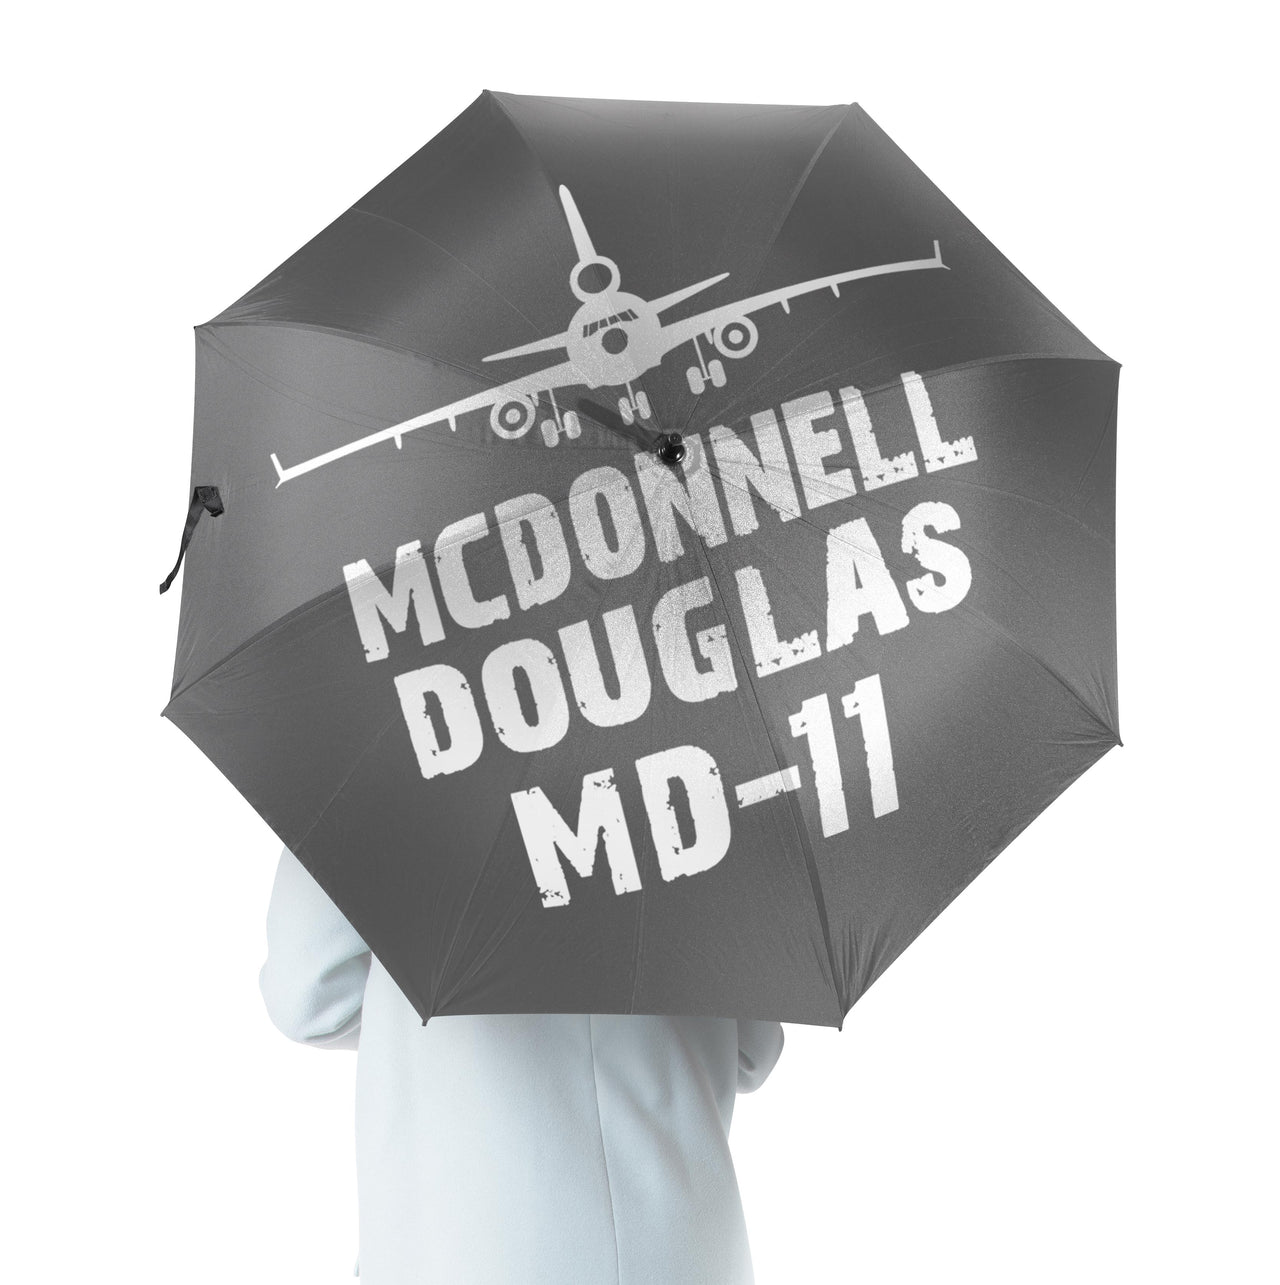 McDonnell Douglas MD-11 & Plane Designed Umbrella